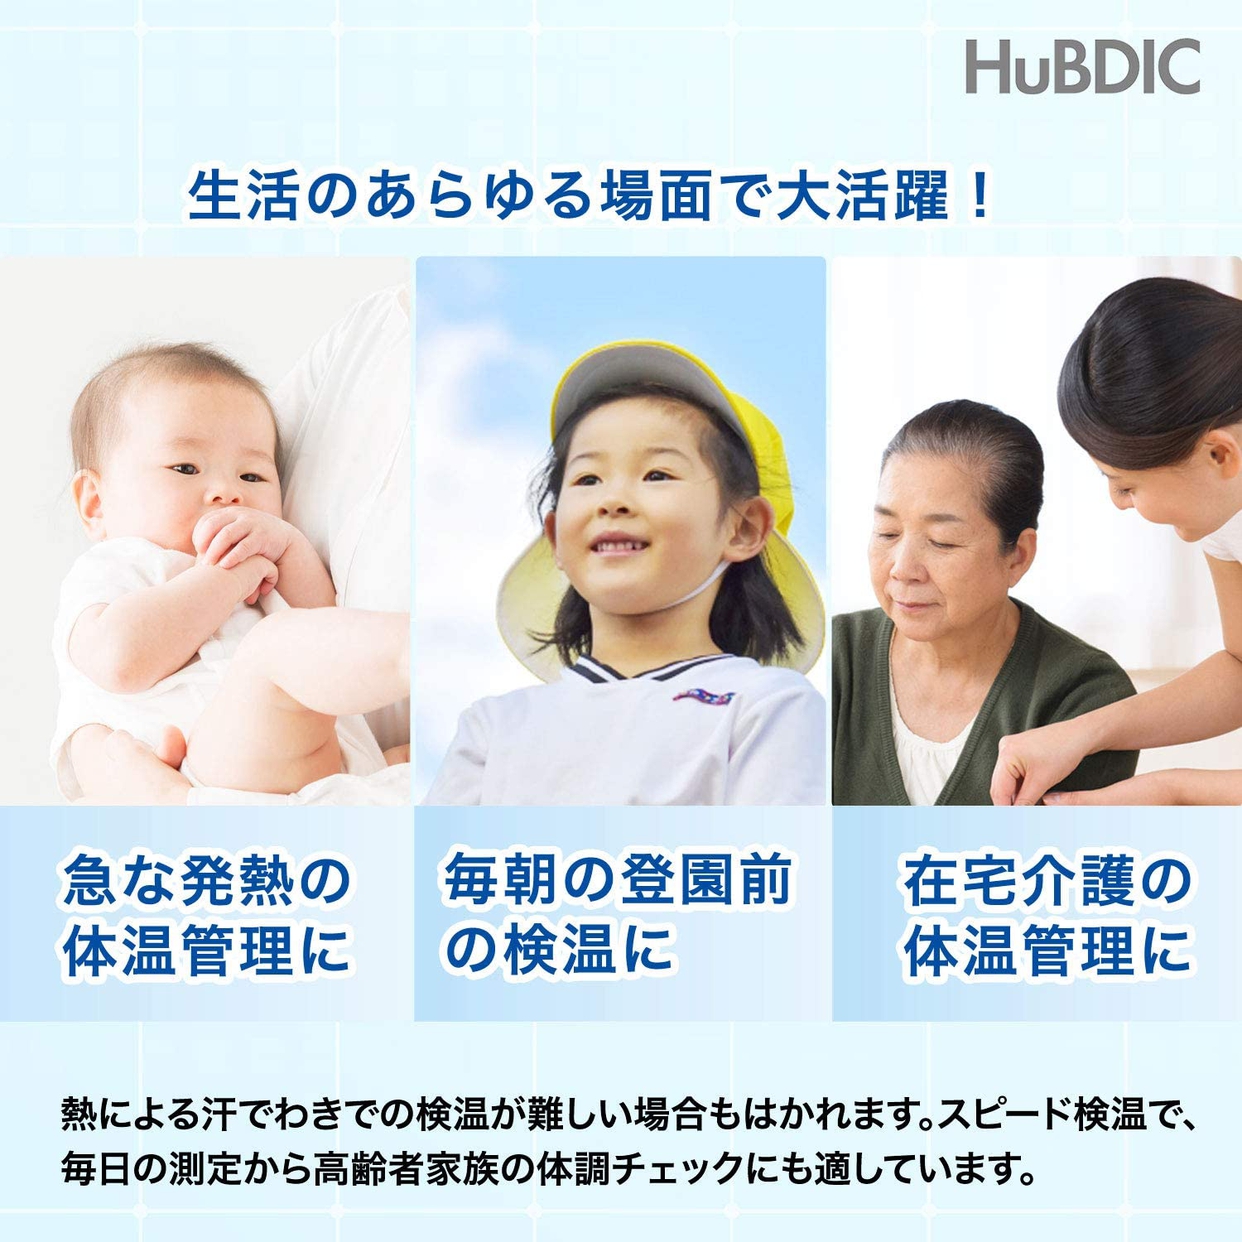 HuBDIC(ヒューデリック) 非接触体温計1000 HFS-1000の商品画像サムネ3 